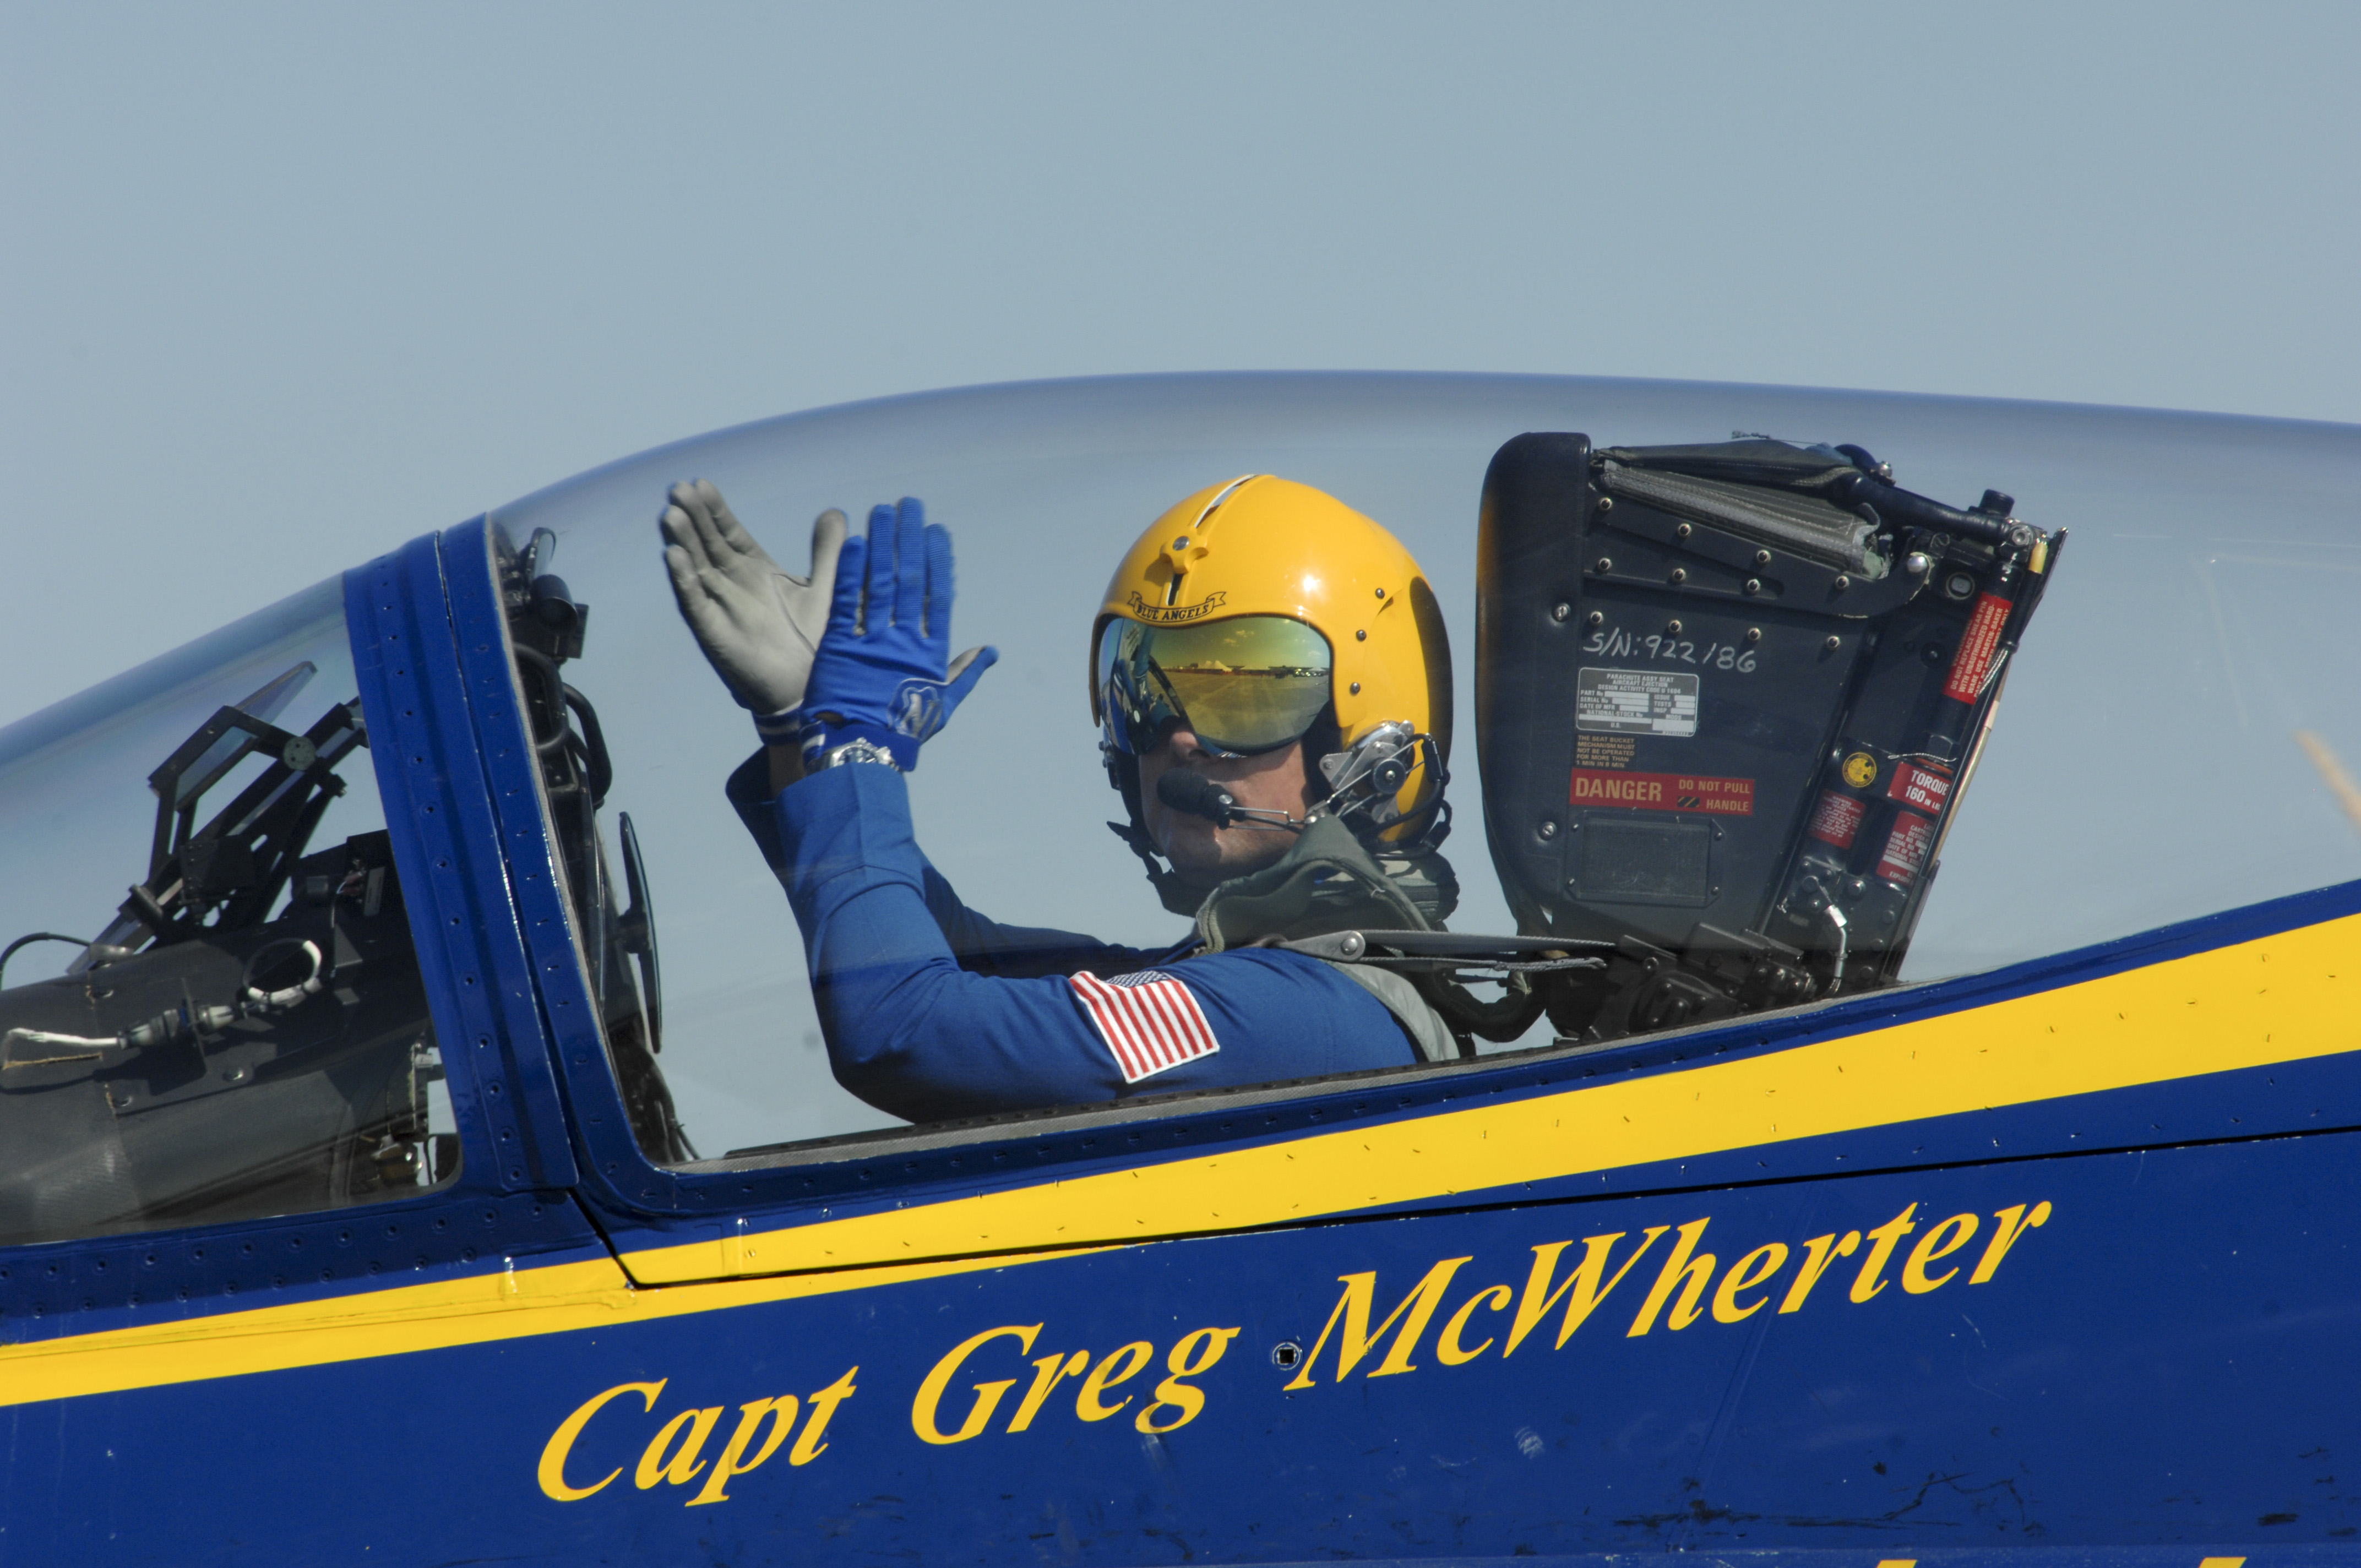 Capt. Greg McWherter in 2011. US Navy Photo